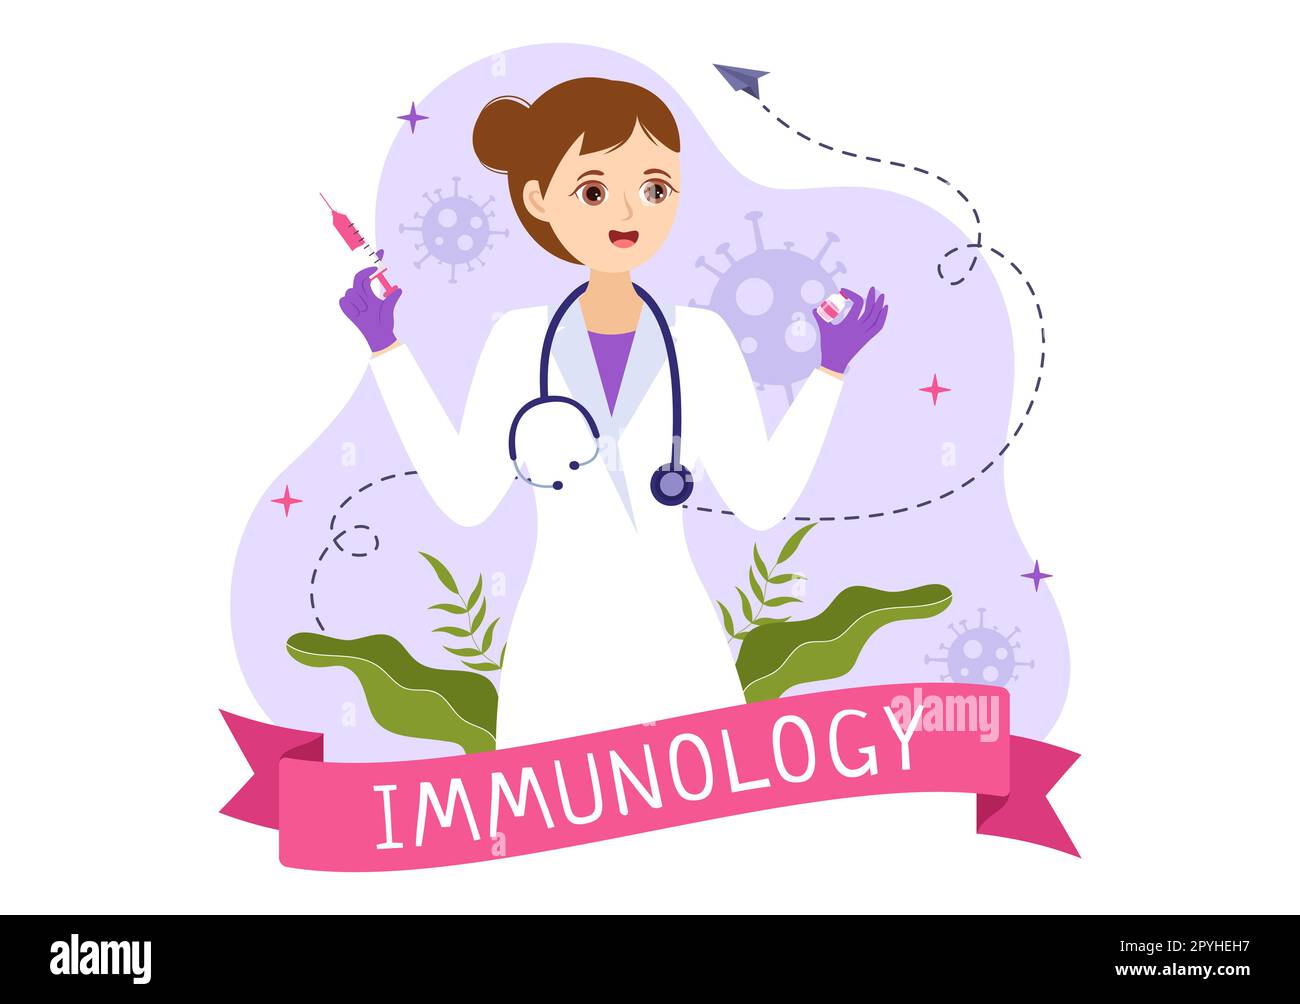 Immunologie Illustration avec les personnes système de protection immunitaire aider à se débarrasser des infections et des bactéries nocives dans les modèles de dessin à la main de Cartoon Banque D'Images